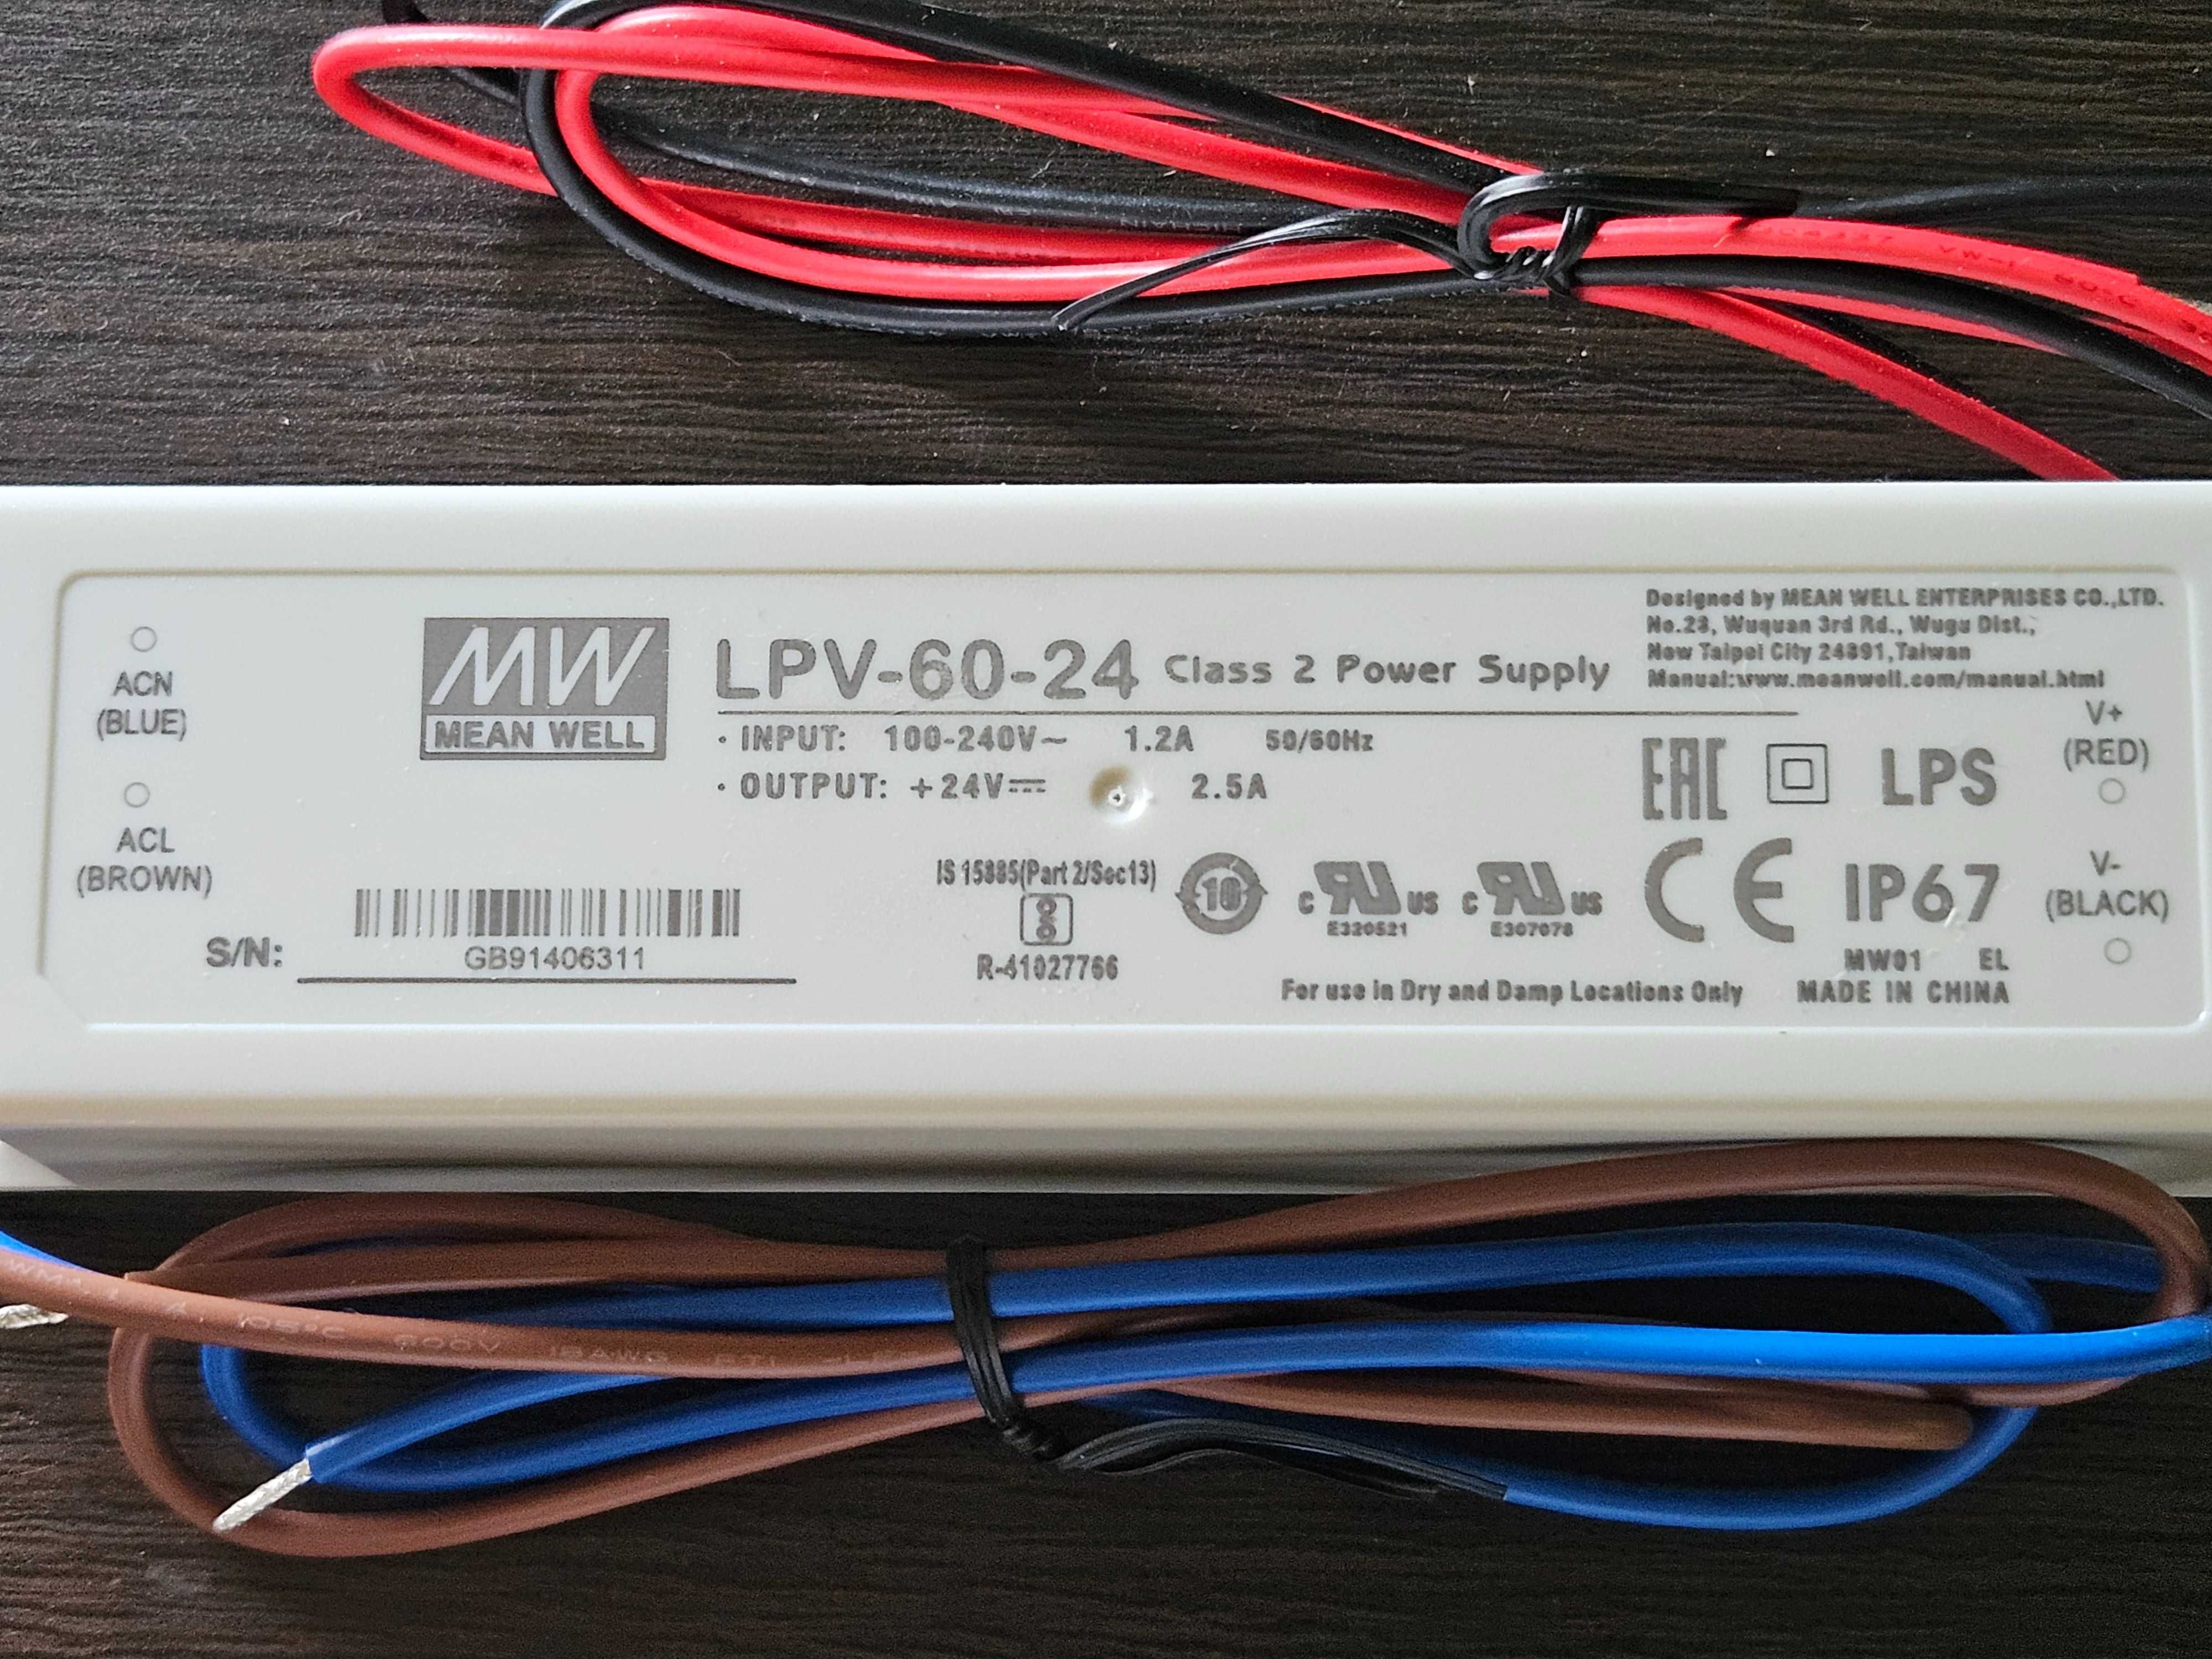 Zasilacz LED LPV-60-24 Mean Well 24V 2.5A